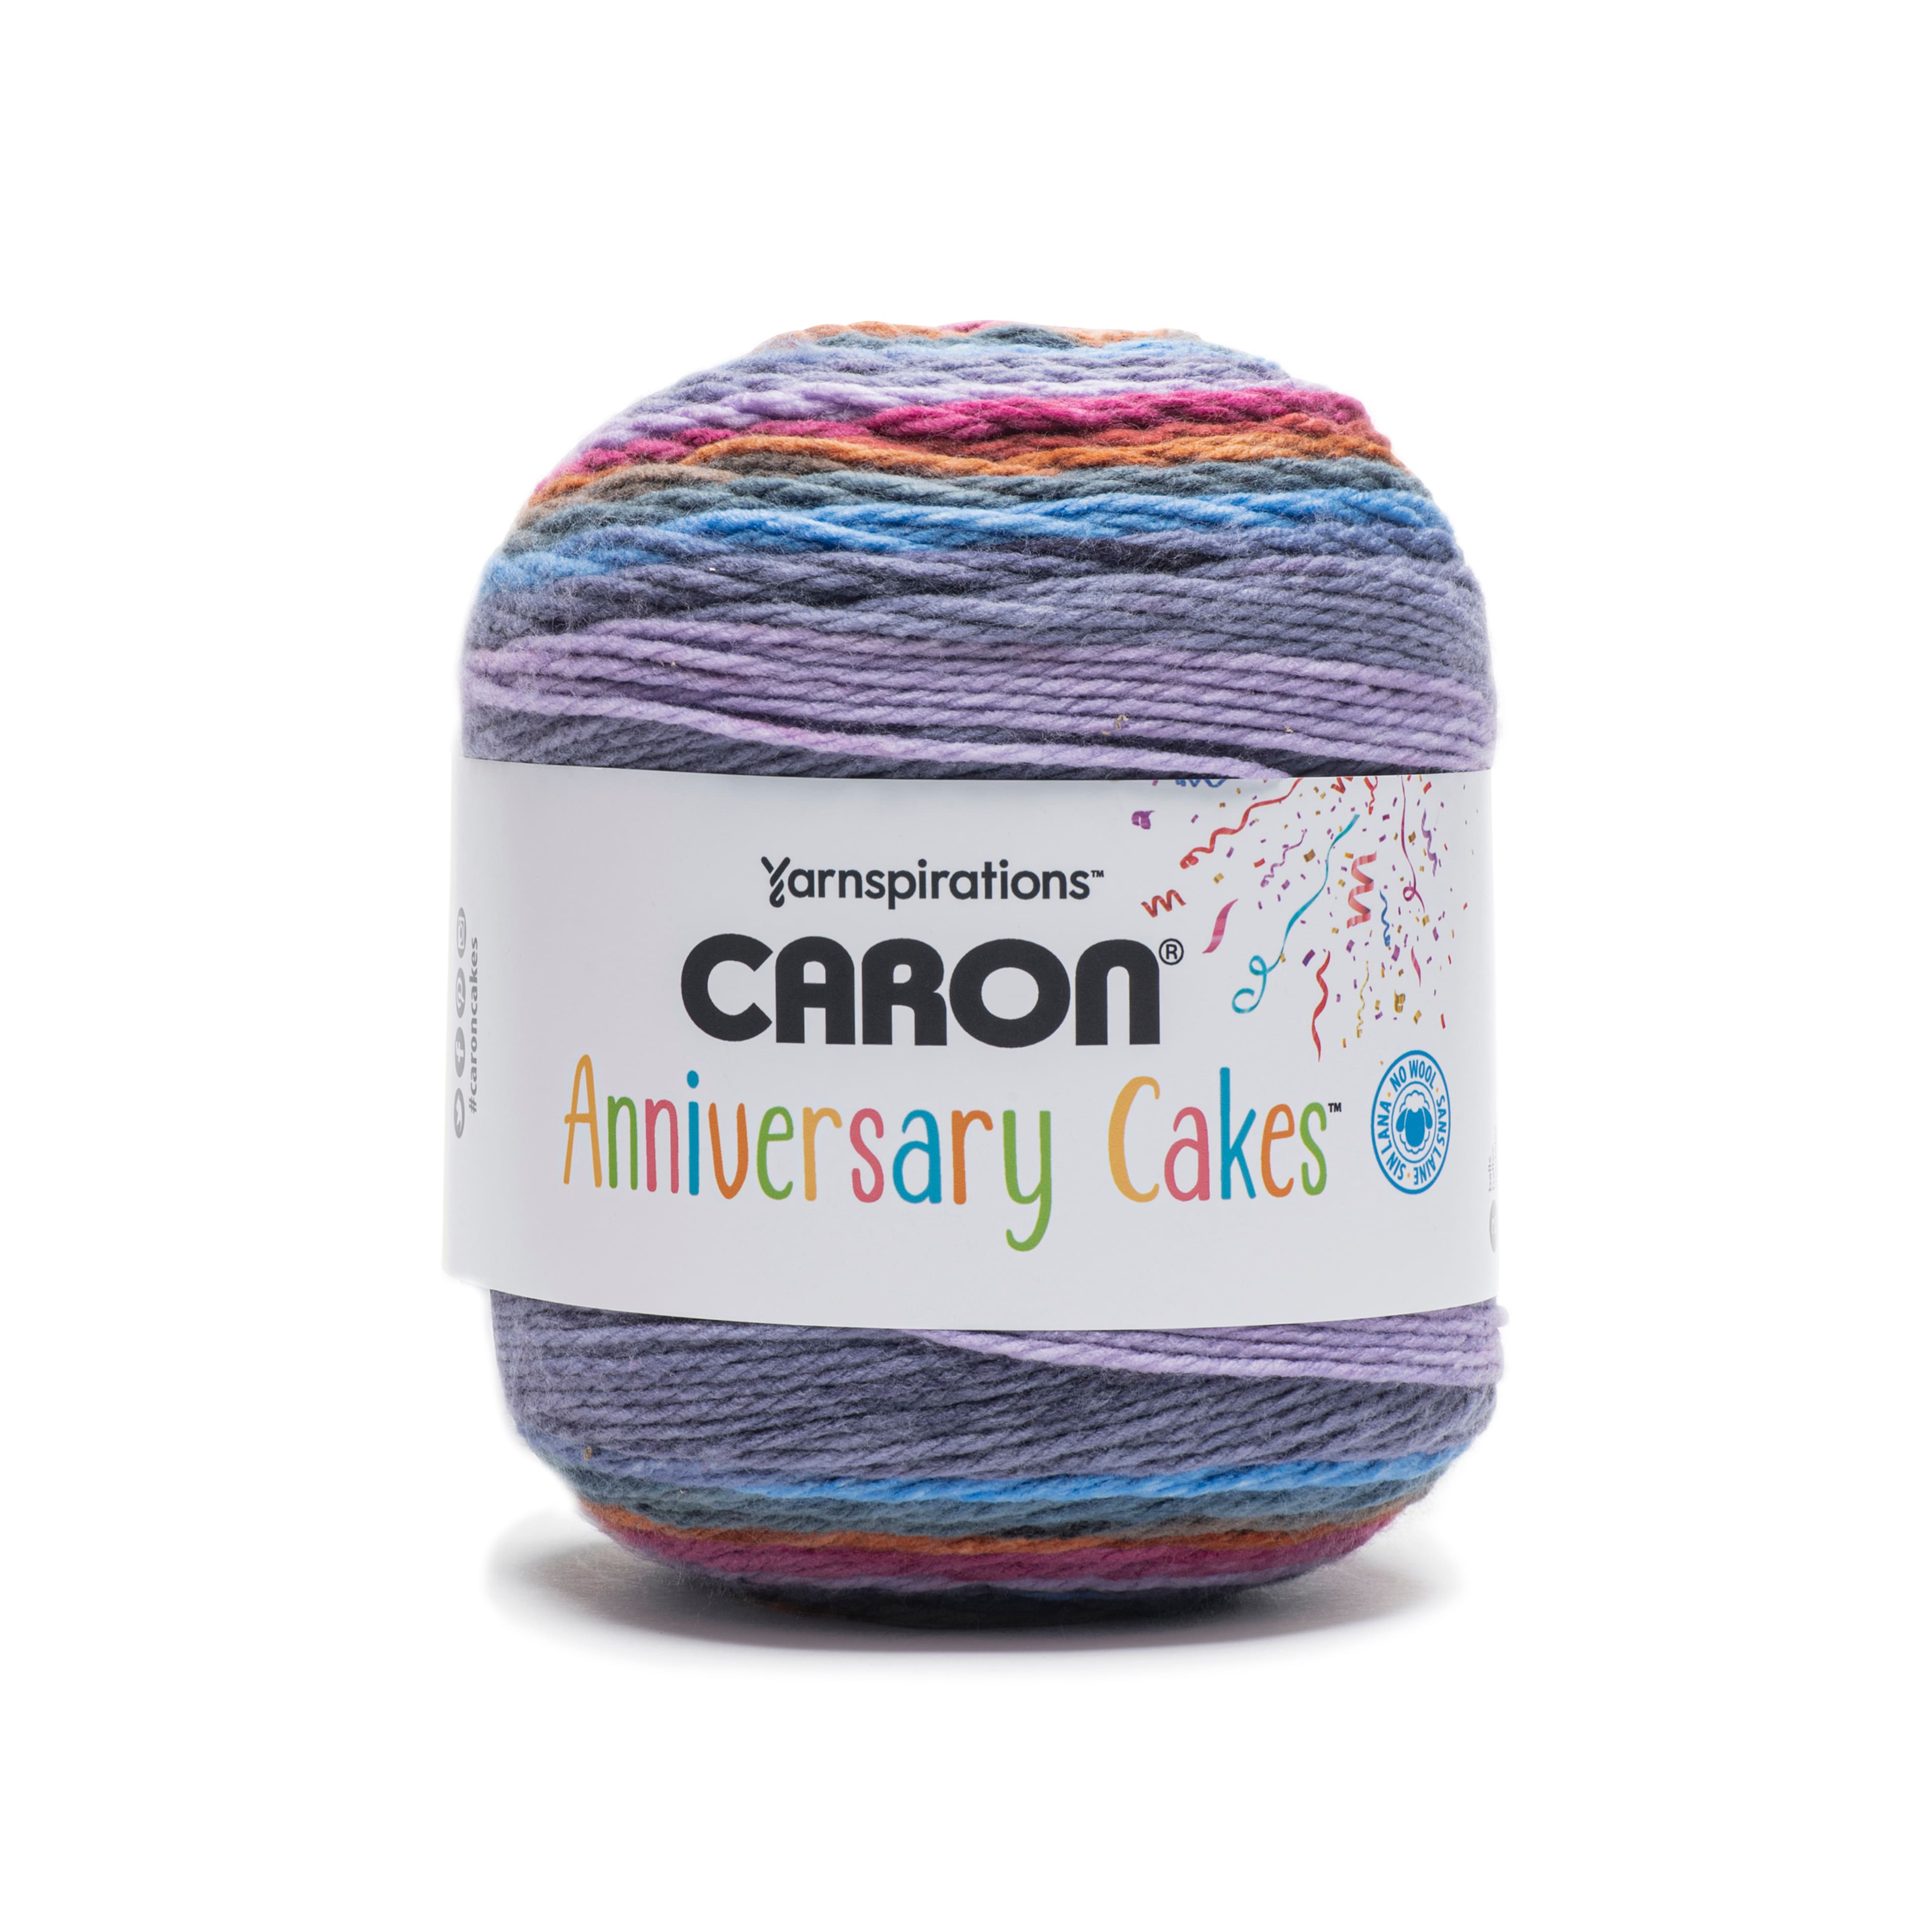 anniversary cakes yarn